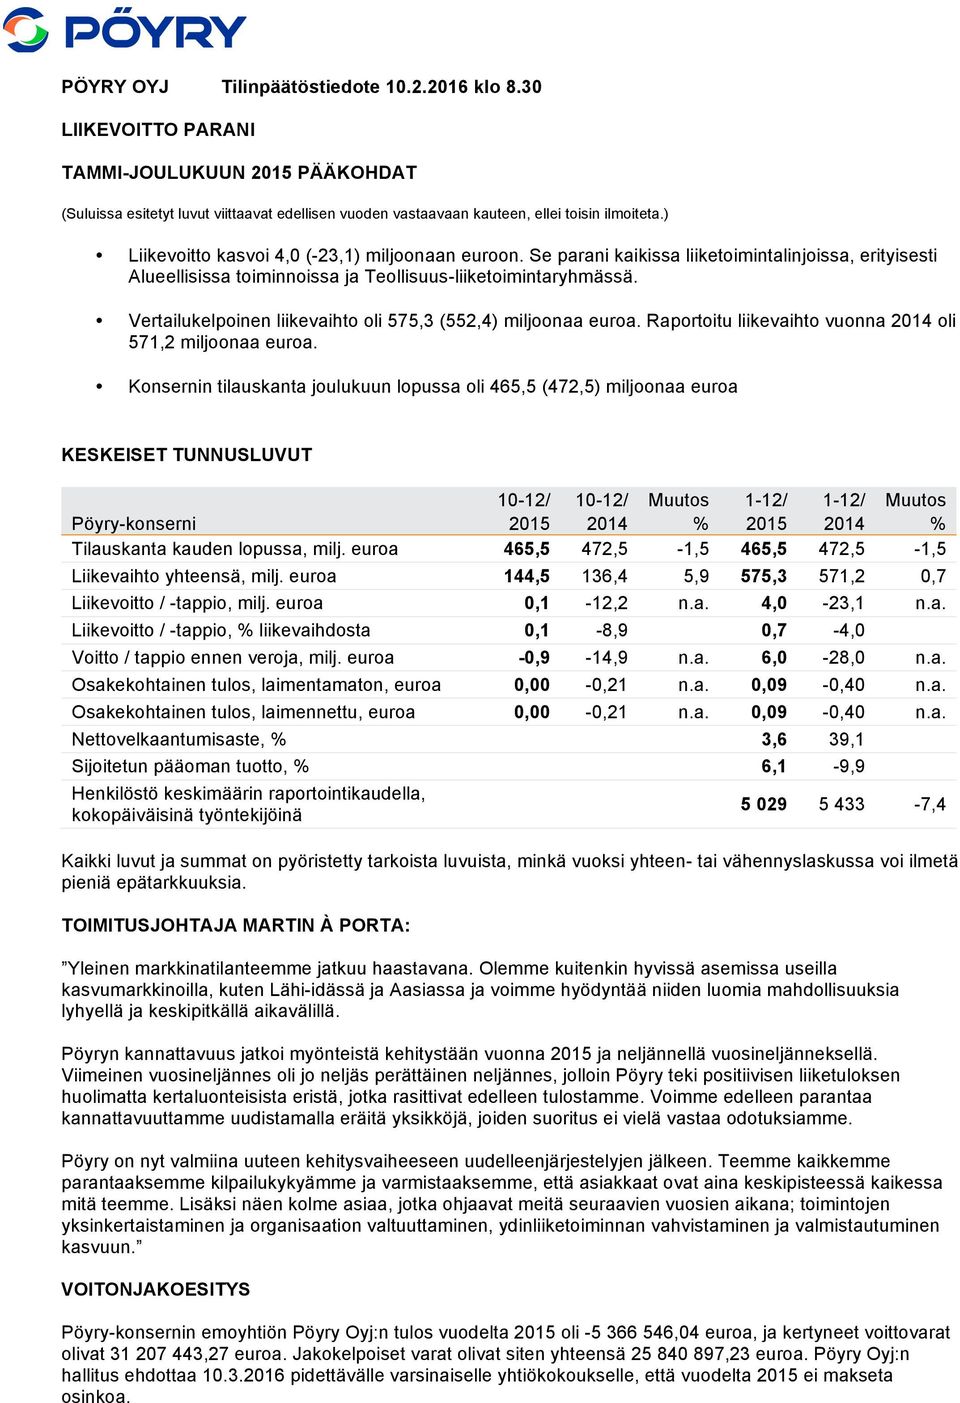 Vertailukelpoinen liikevaihto oli 575,3 (552,4) miljoonaa euroa. Raportoitu liikevaihto vuonna 2014 oli 571,2 miljoonaa euroa.